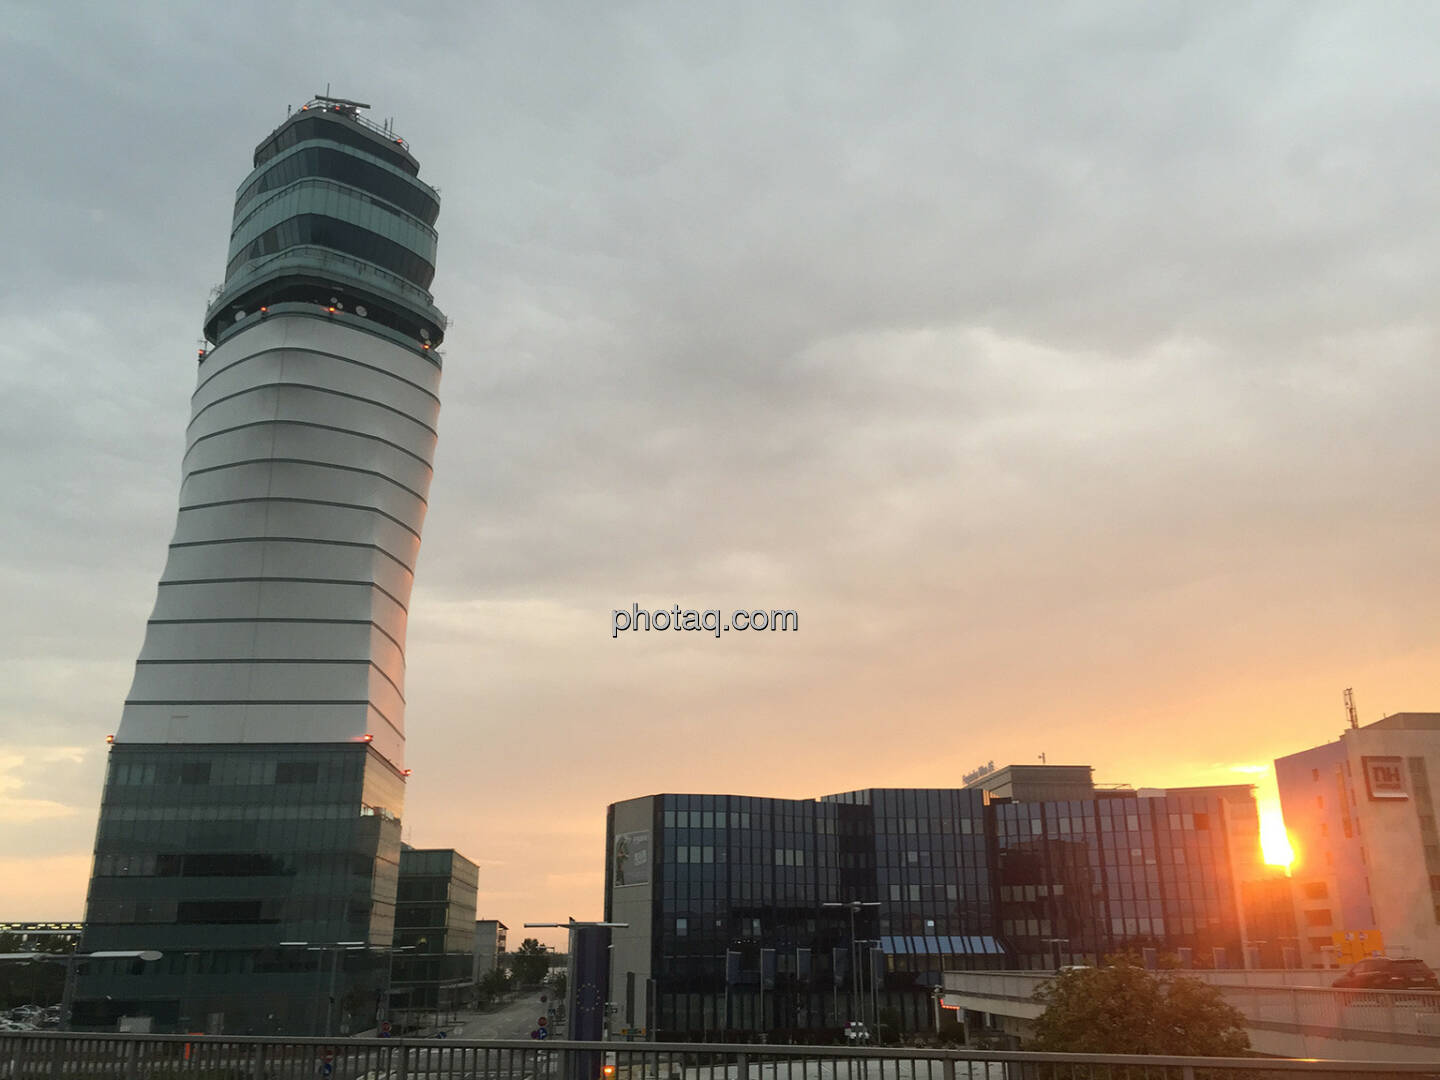 Flughafen Wien AG, Vienna International Airport, Sonne, Tower